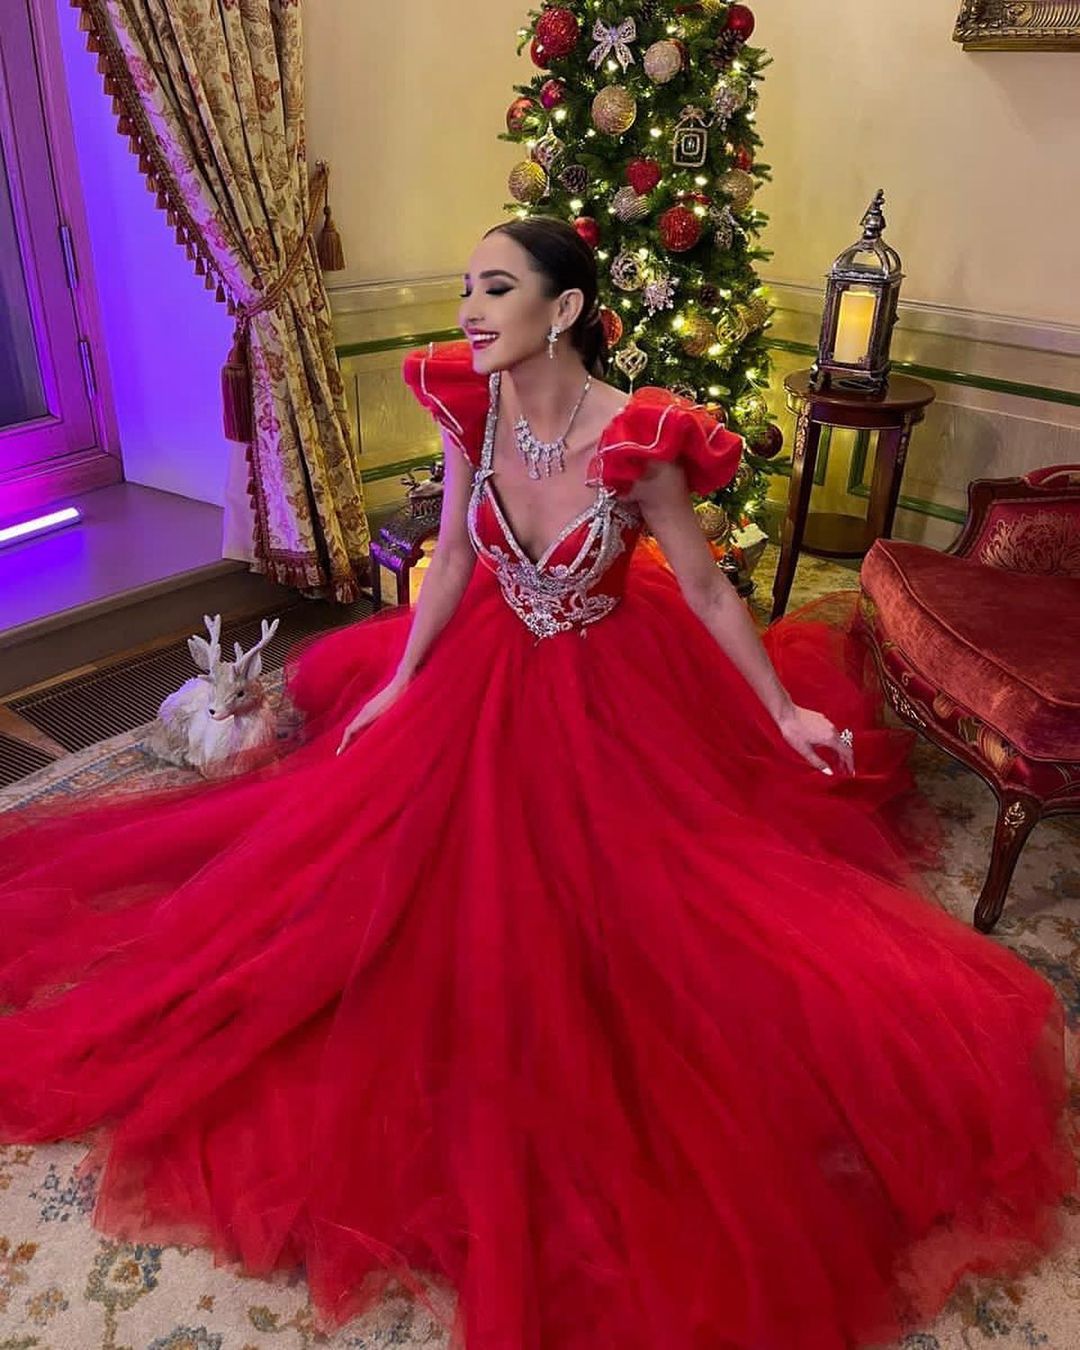 Ольга Бузова в красном платье с декольте восхитила фанатов